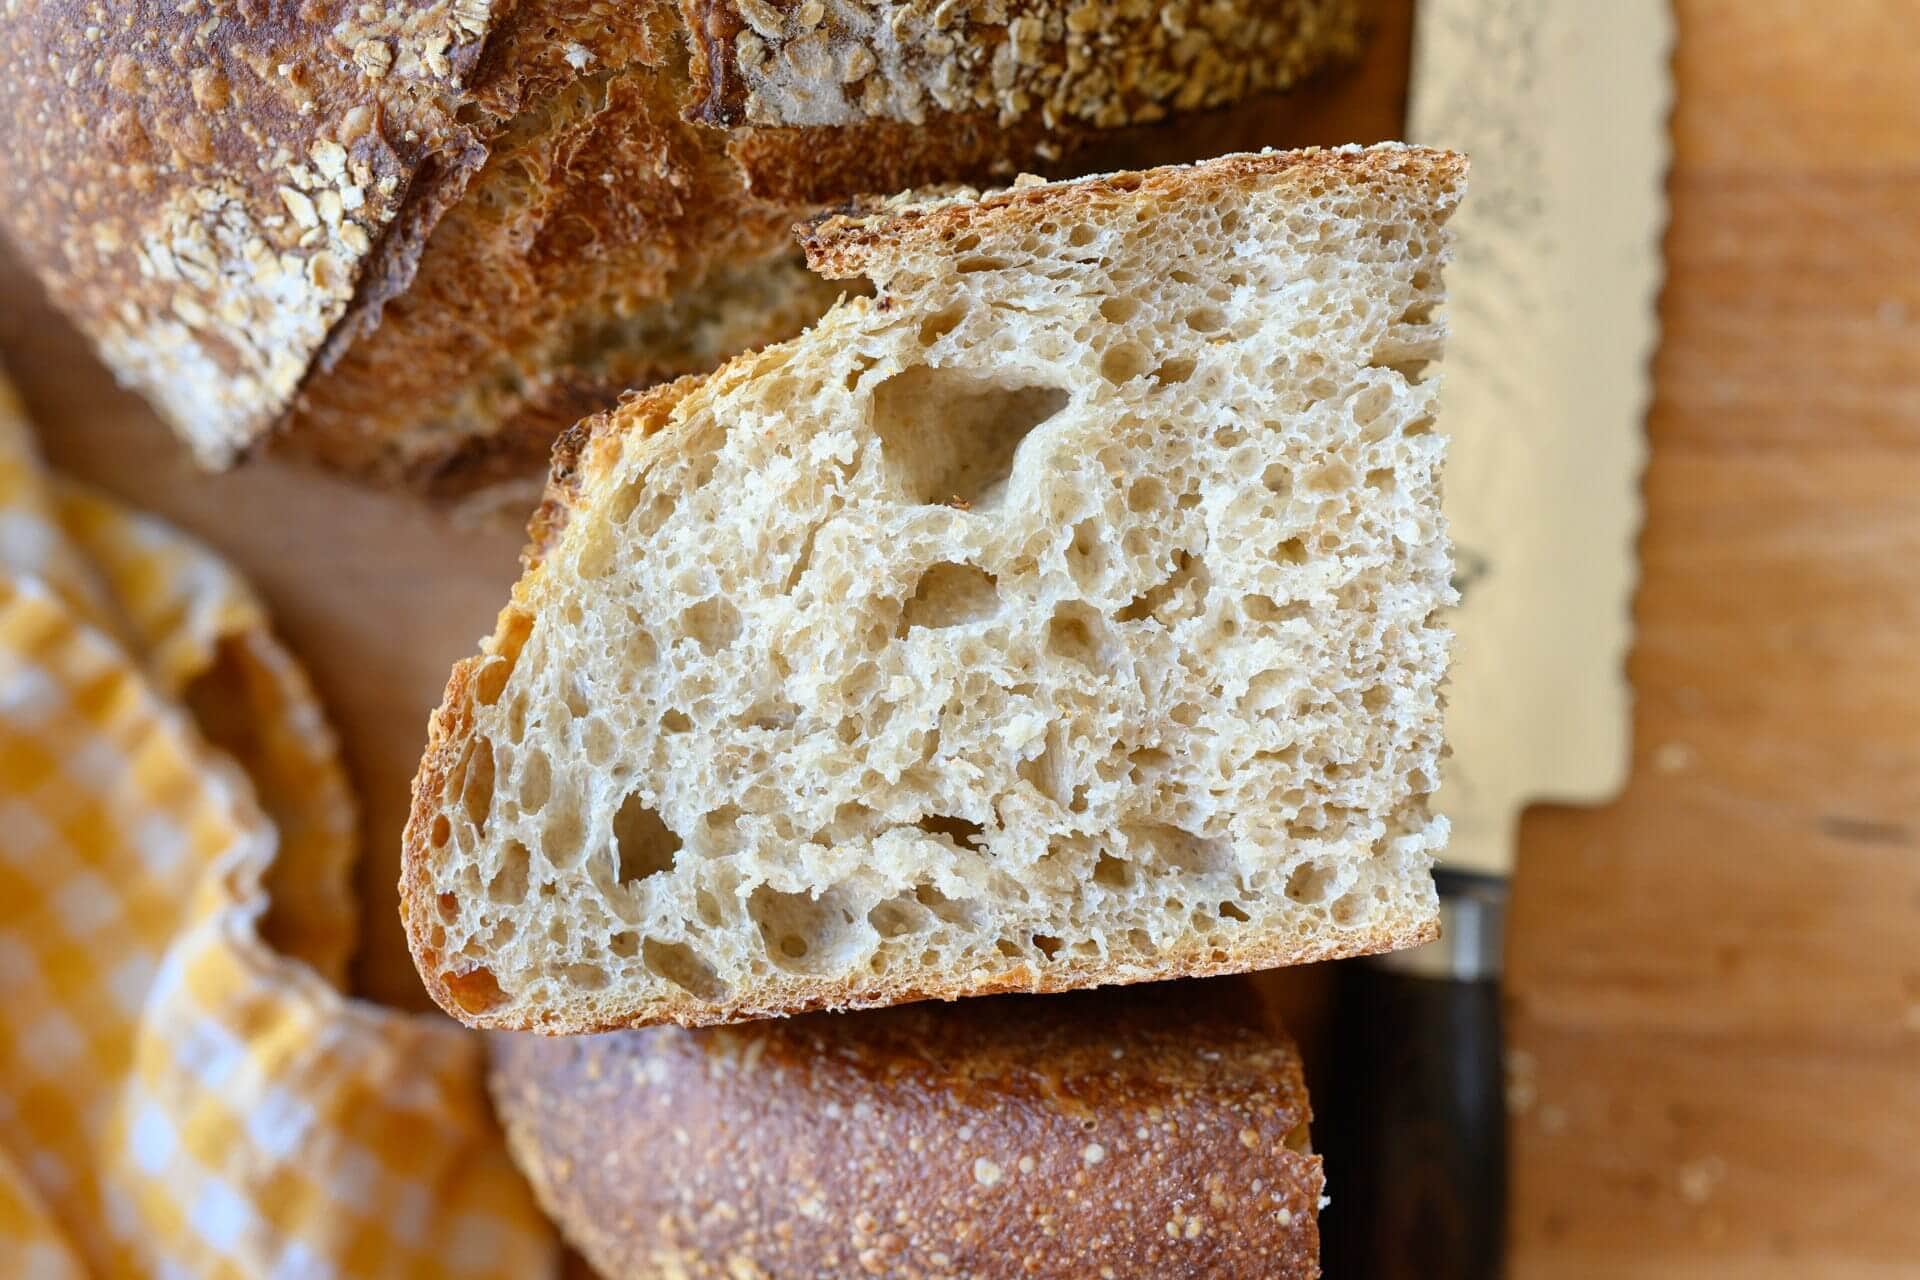 Crumb of the malted wheat sourdough bread